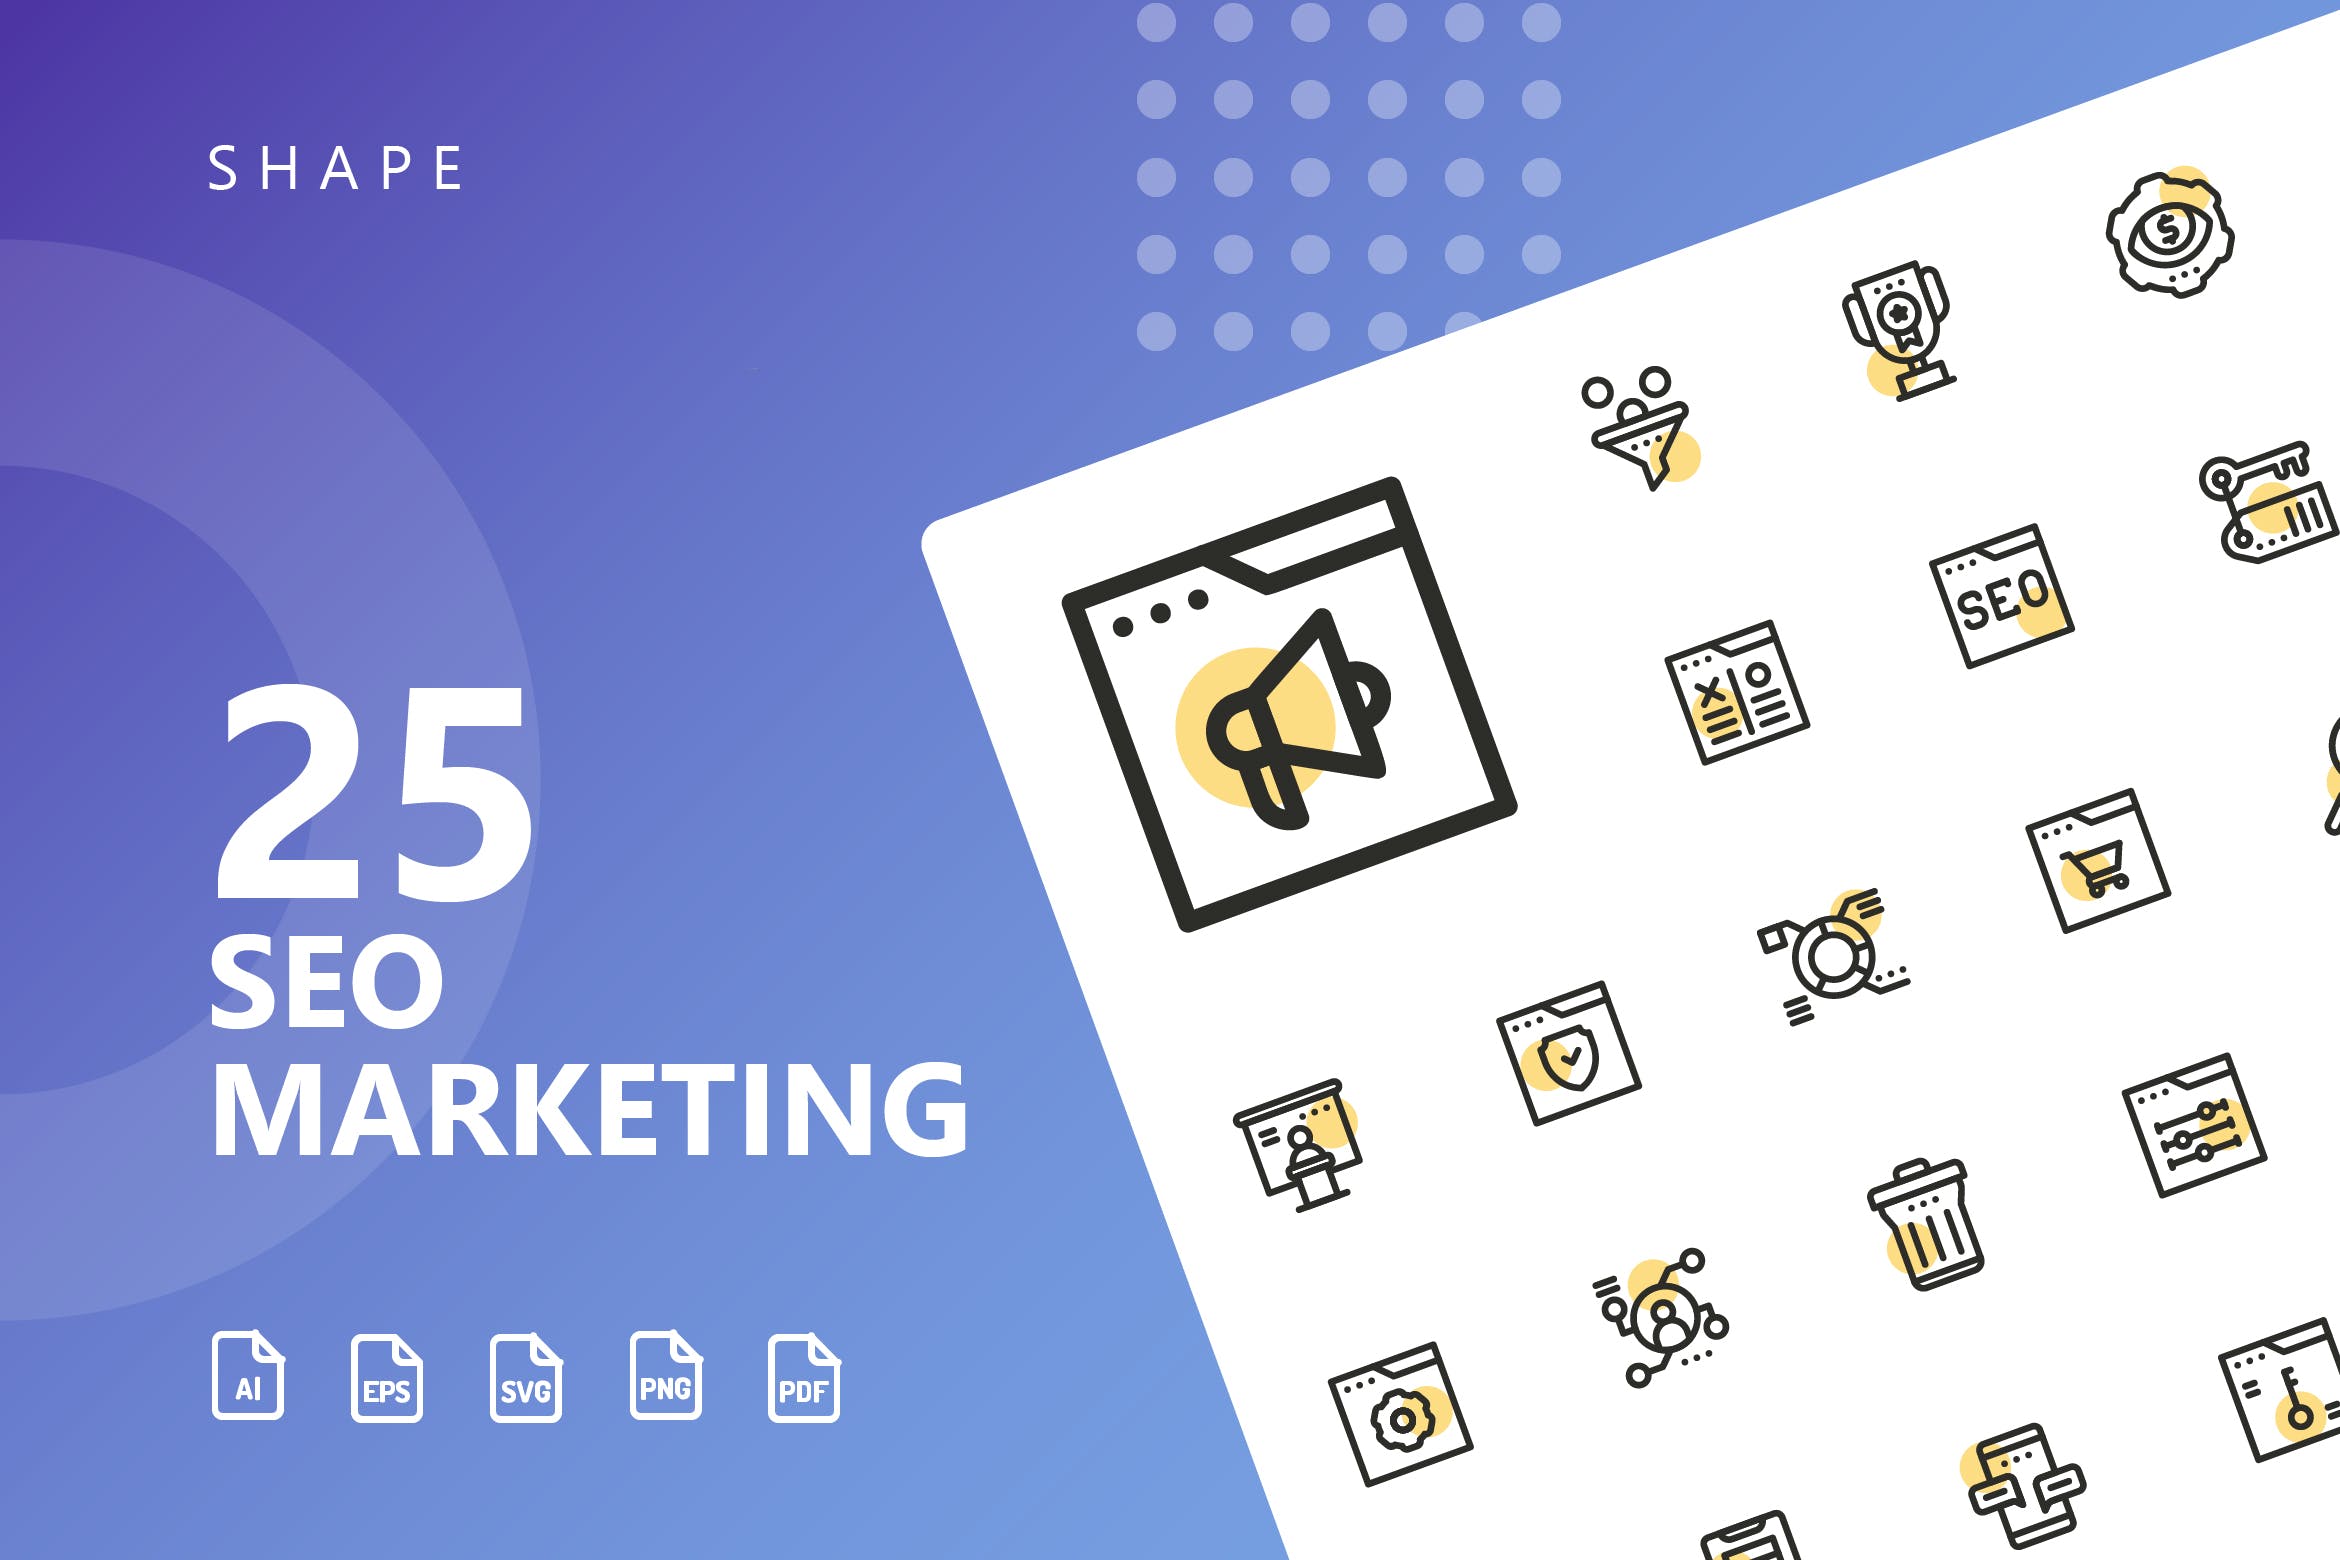 25枚SEO搜索引擎优化营销矢量圆点装饰蚂蚁素材精选图标v2 SEO Marketing Shape Icons插图